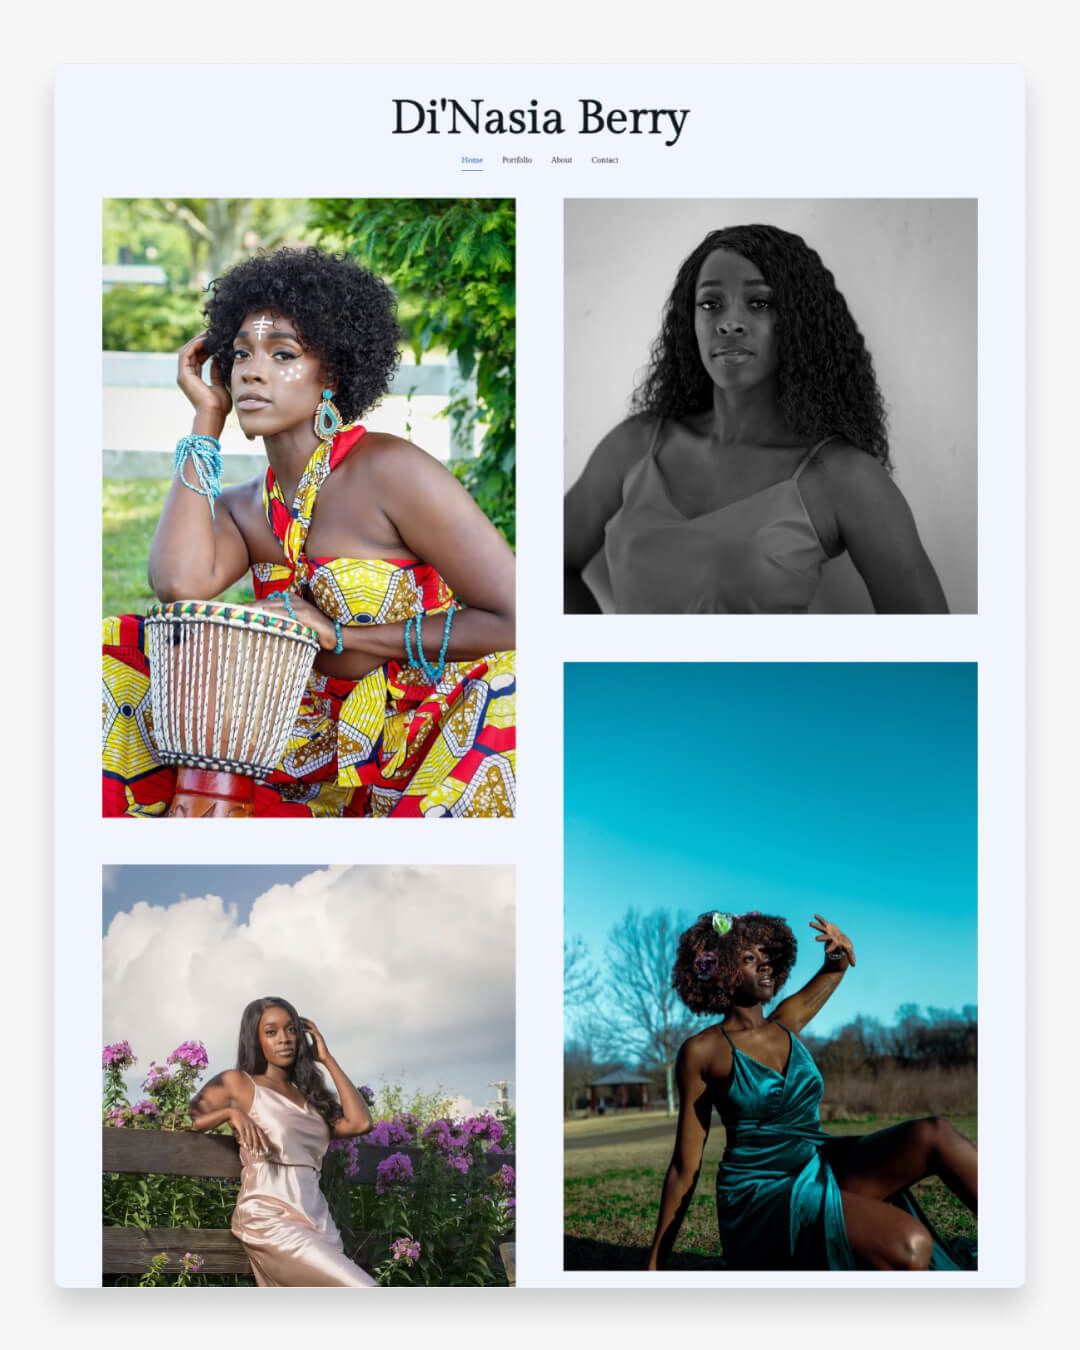 Witryna internetowa z portfolio modeli Di'Nasia Berry